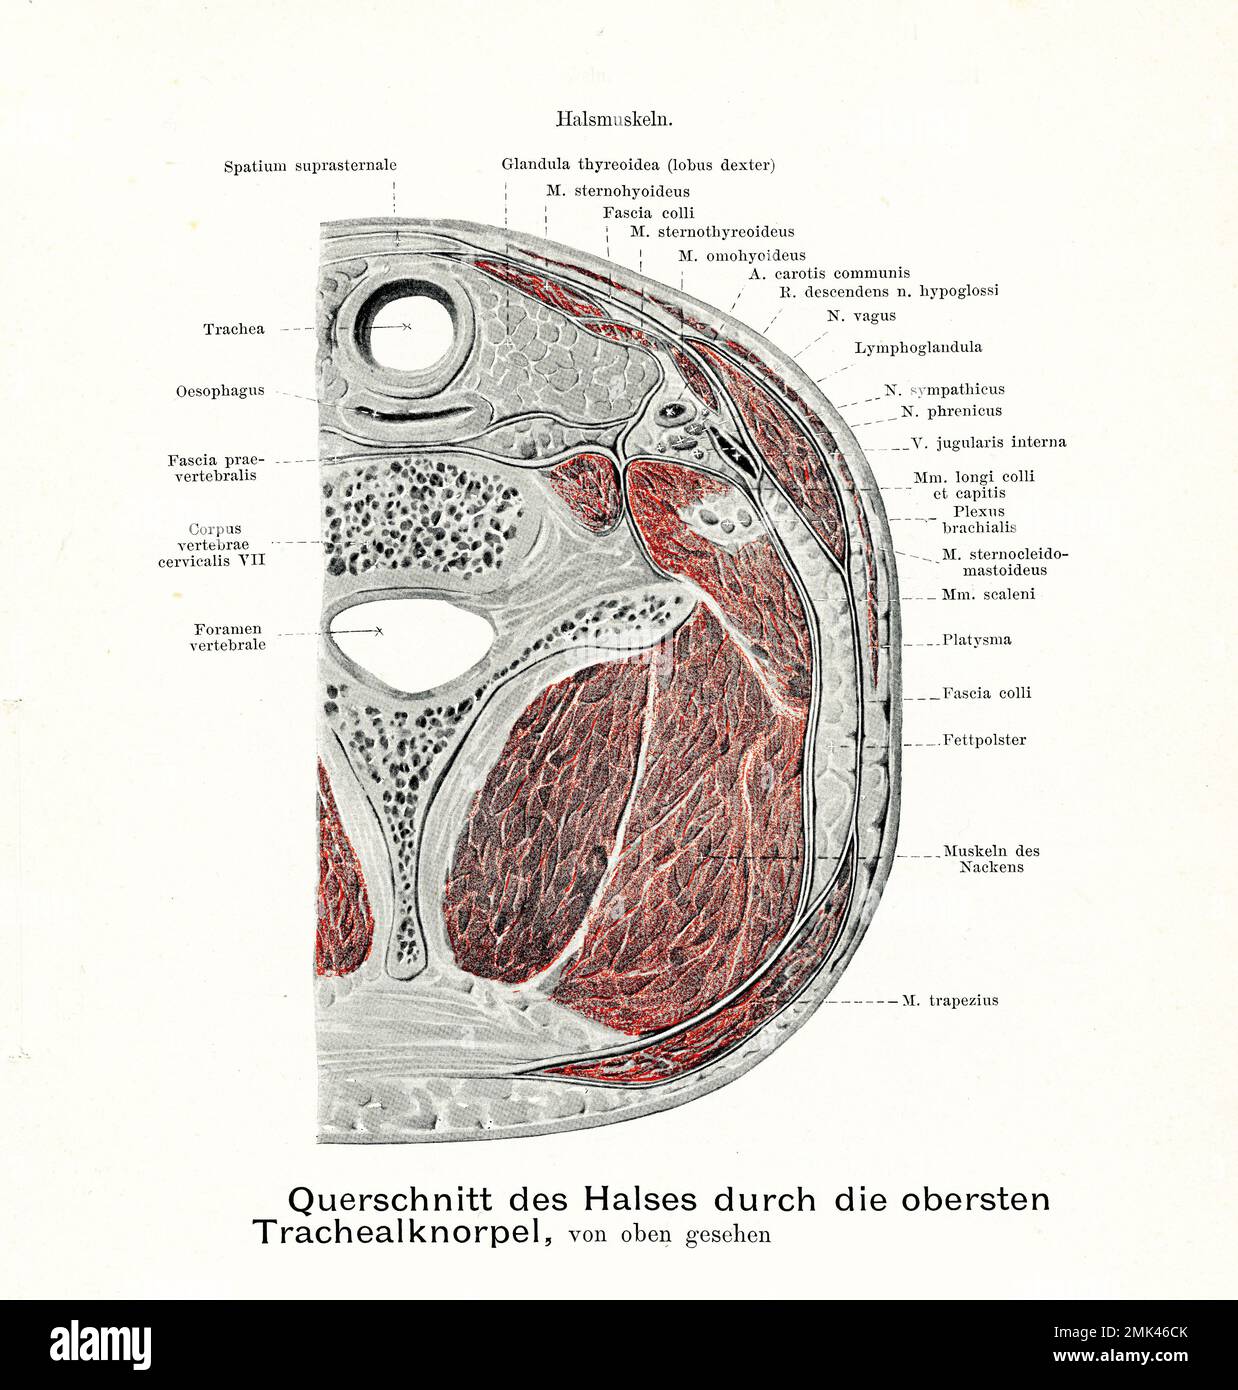 Illustration ancienne de l'anatomie de la section transversale de la gorge et des cartilages trachéaux supérieurs, vue de dessus, avec descriptions anatomiques allemandes Banque D'Images